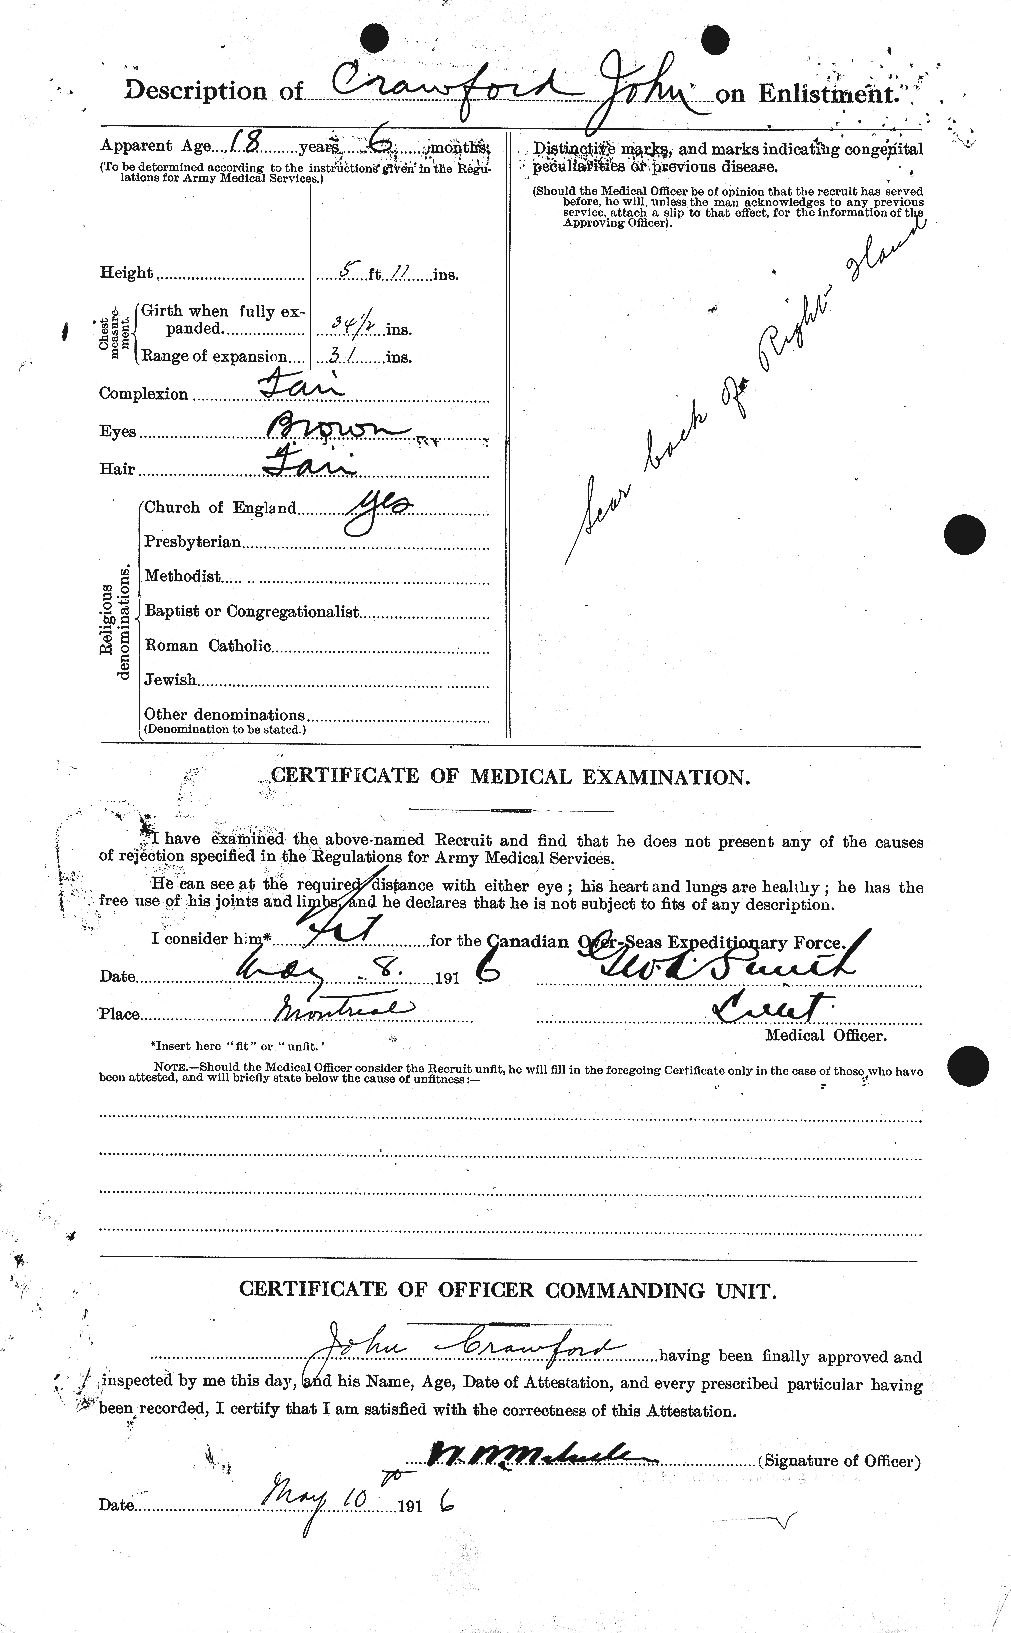 Dossiers du Personnel de la Première Guerre mondiale - CEC 062453b